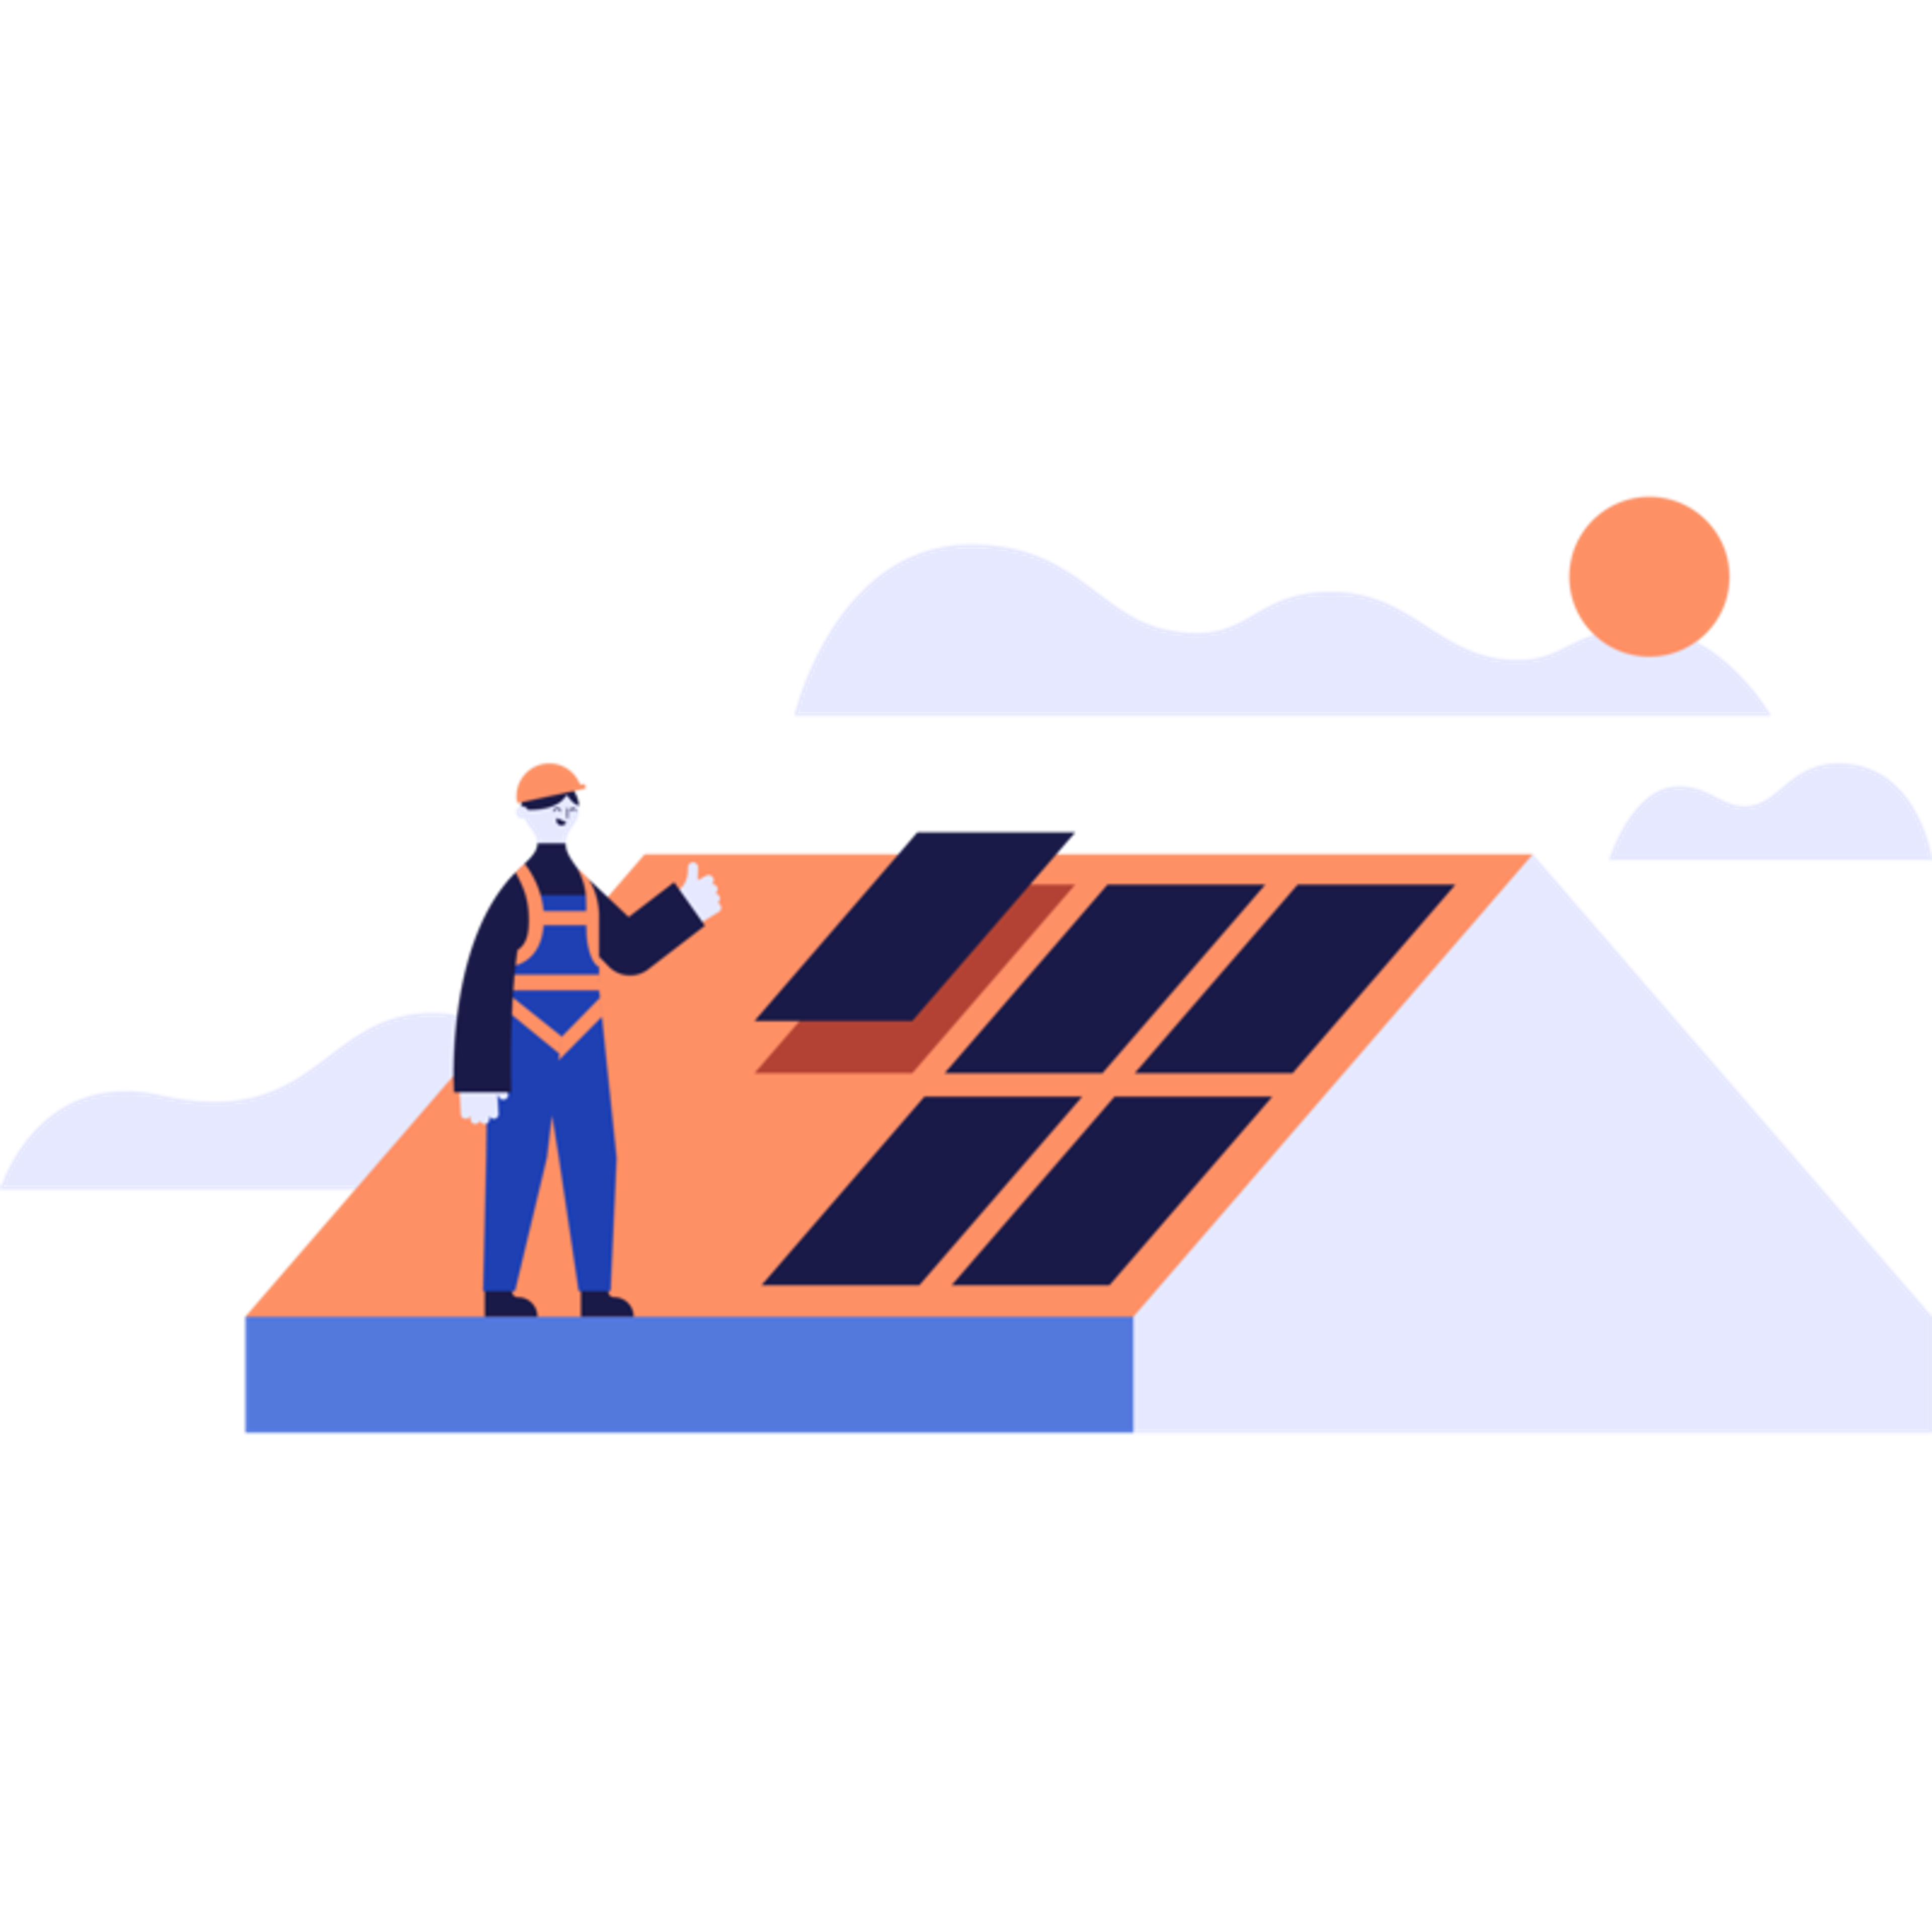 Solaranbieter Otovo - Der einfachste Weg zu Ihrer eigenen Solaranlage mit Preisgarantie!